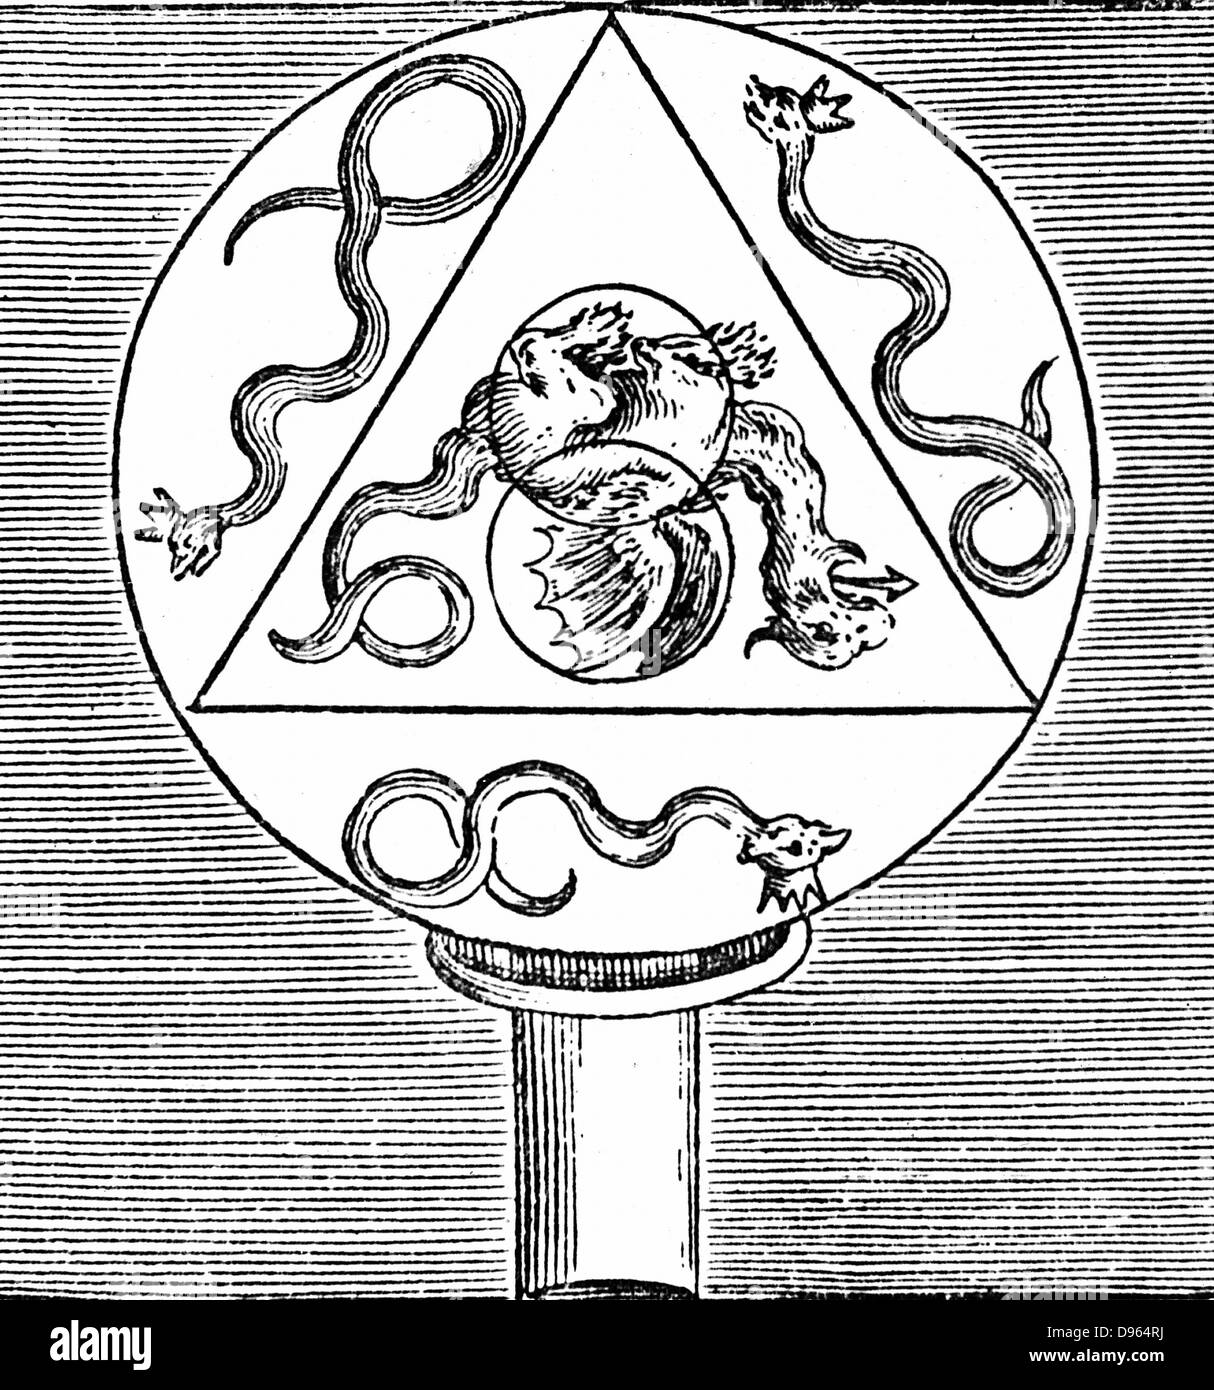 Symboles de la synthèse de l'excellent travail. 4 faces = 4 éléments. 3  =serpents tria prima (soufre, mercure, sel). 2 cercles =masculin et féminin  propriétés. Grand cercle attaché au tube =Vase hermétique.